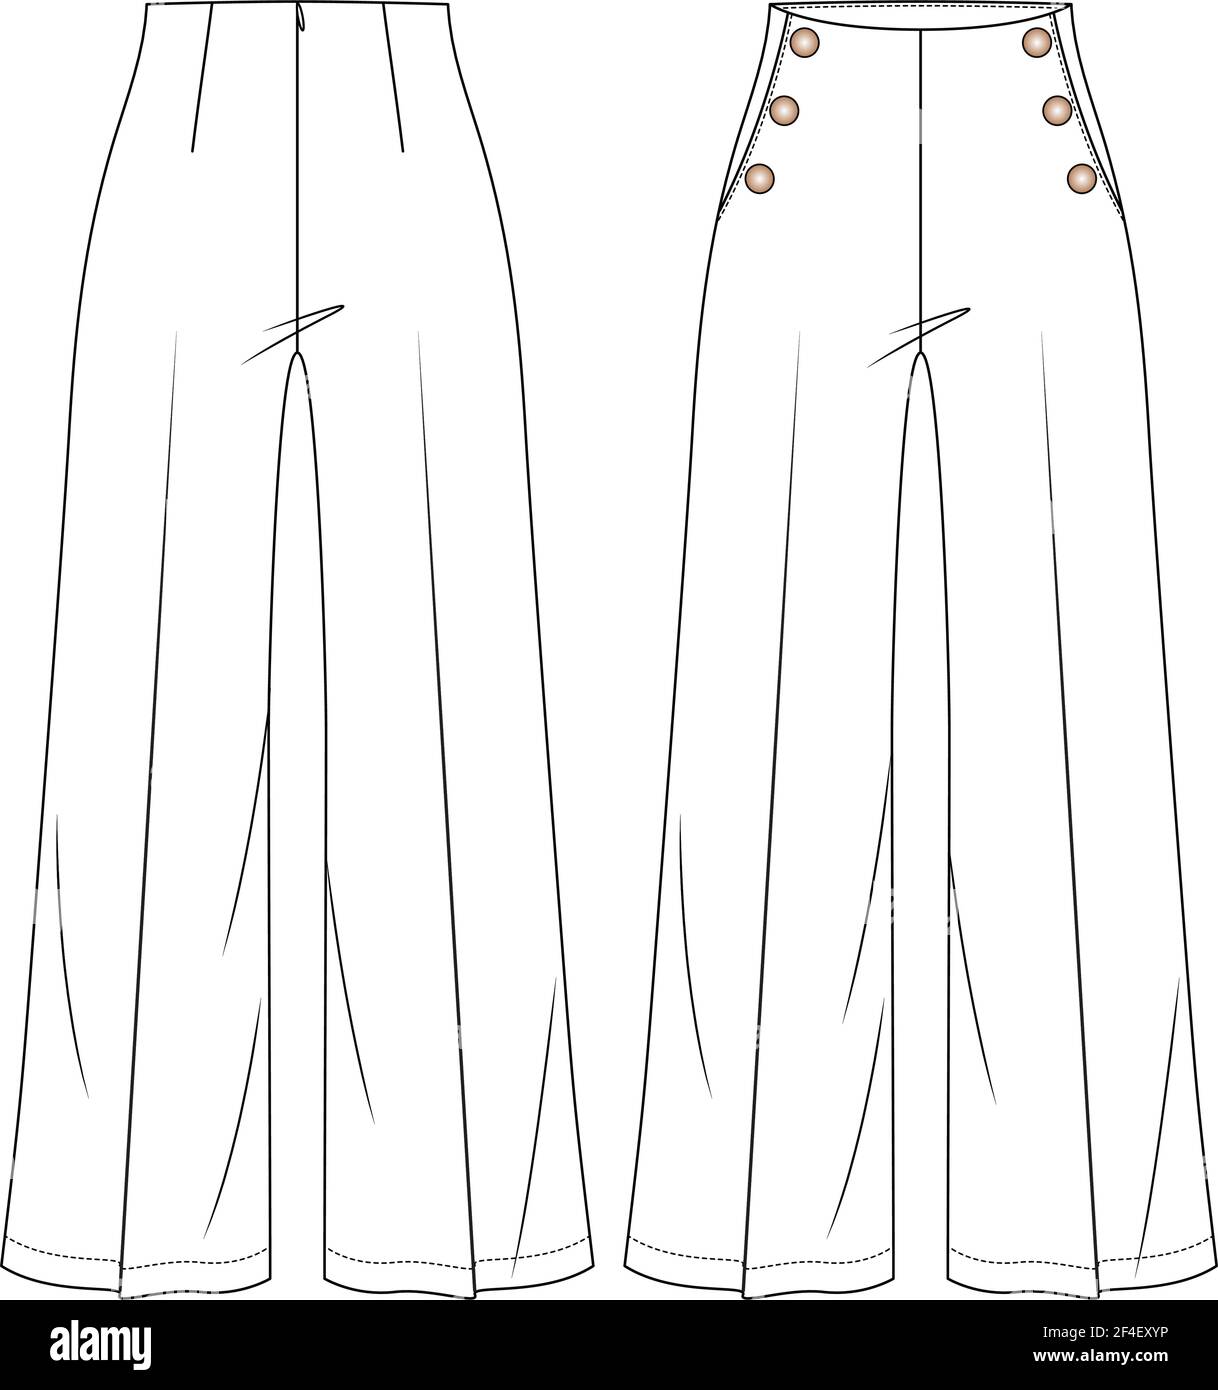 Frauen Hohe Taille Sailor Hose Vektor Mode Flache Skizzen. Technische Illustration Für Mode-Vorlagen. Weite Beine. Knopfdetail Stock Vektor